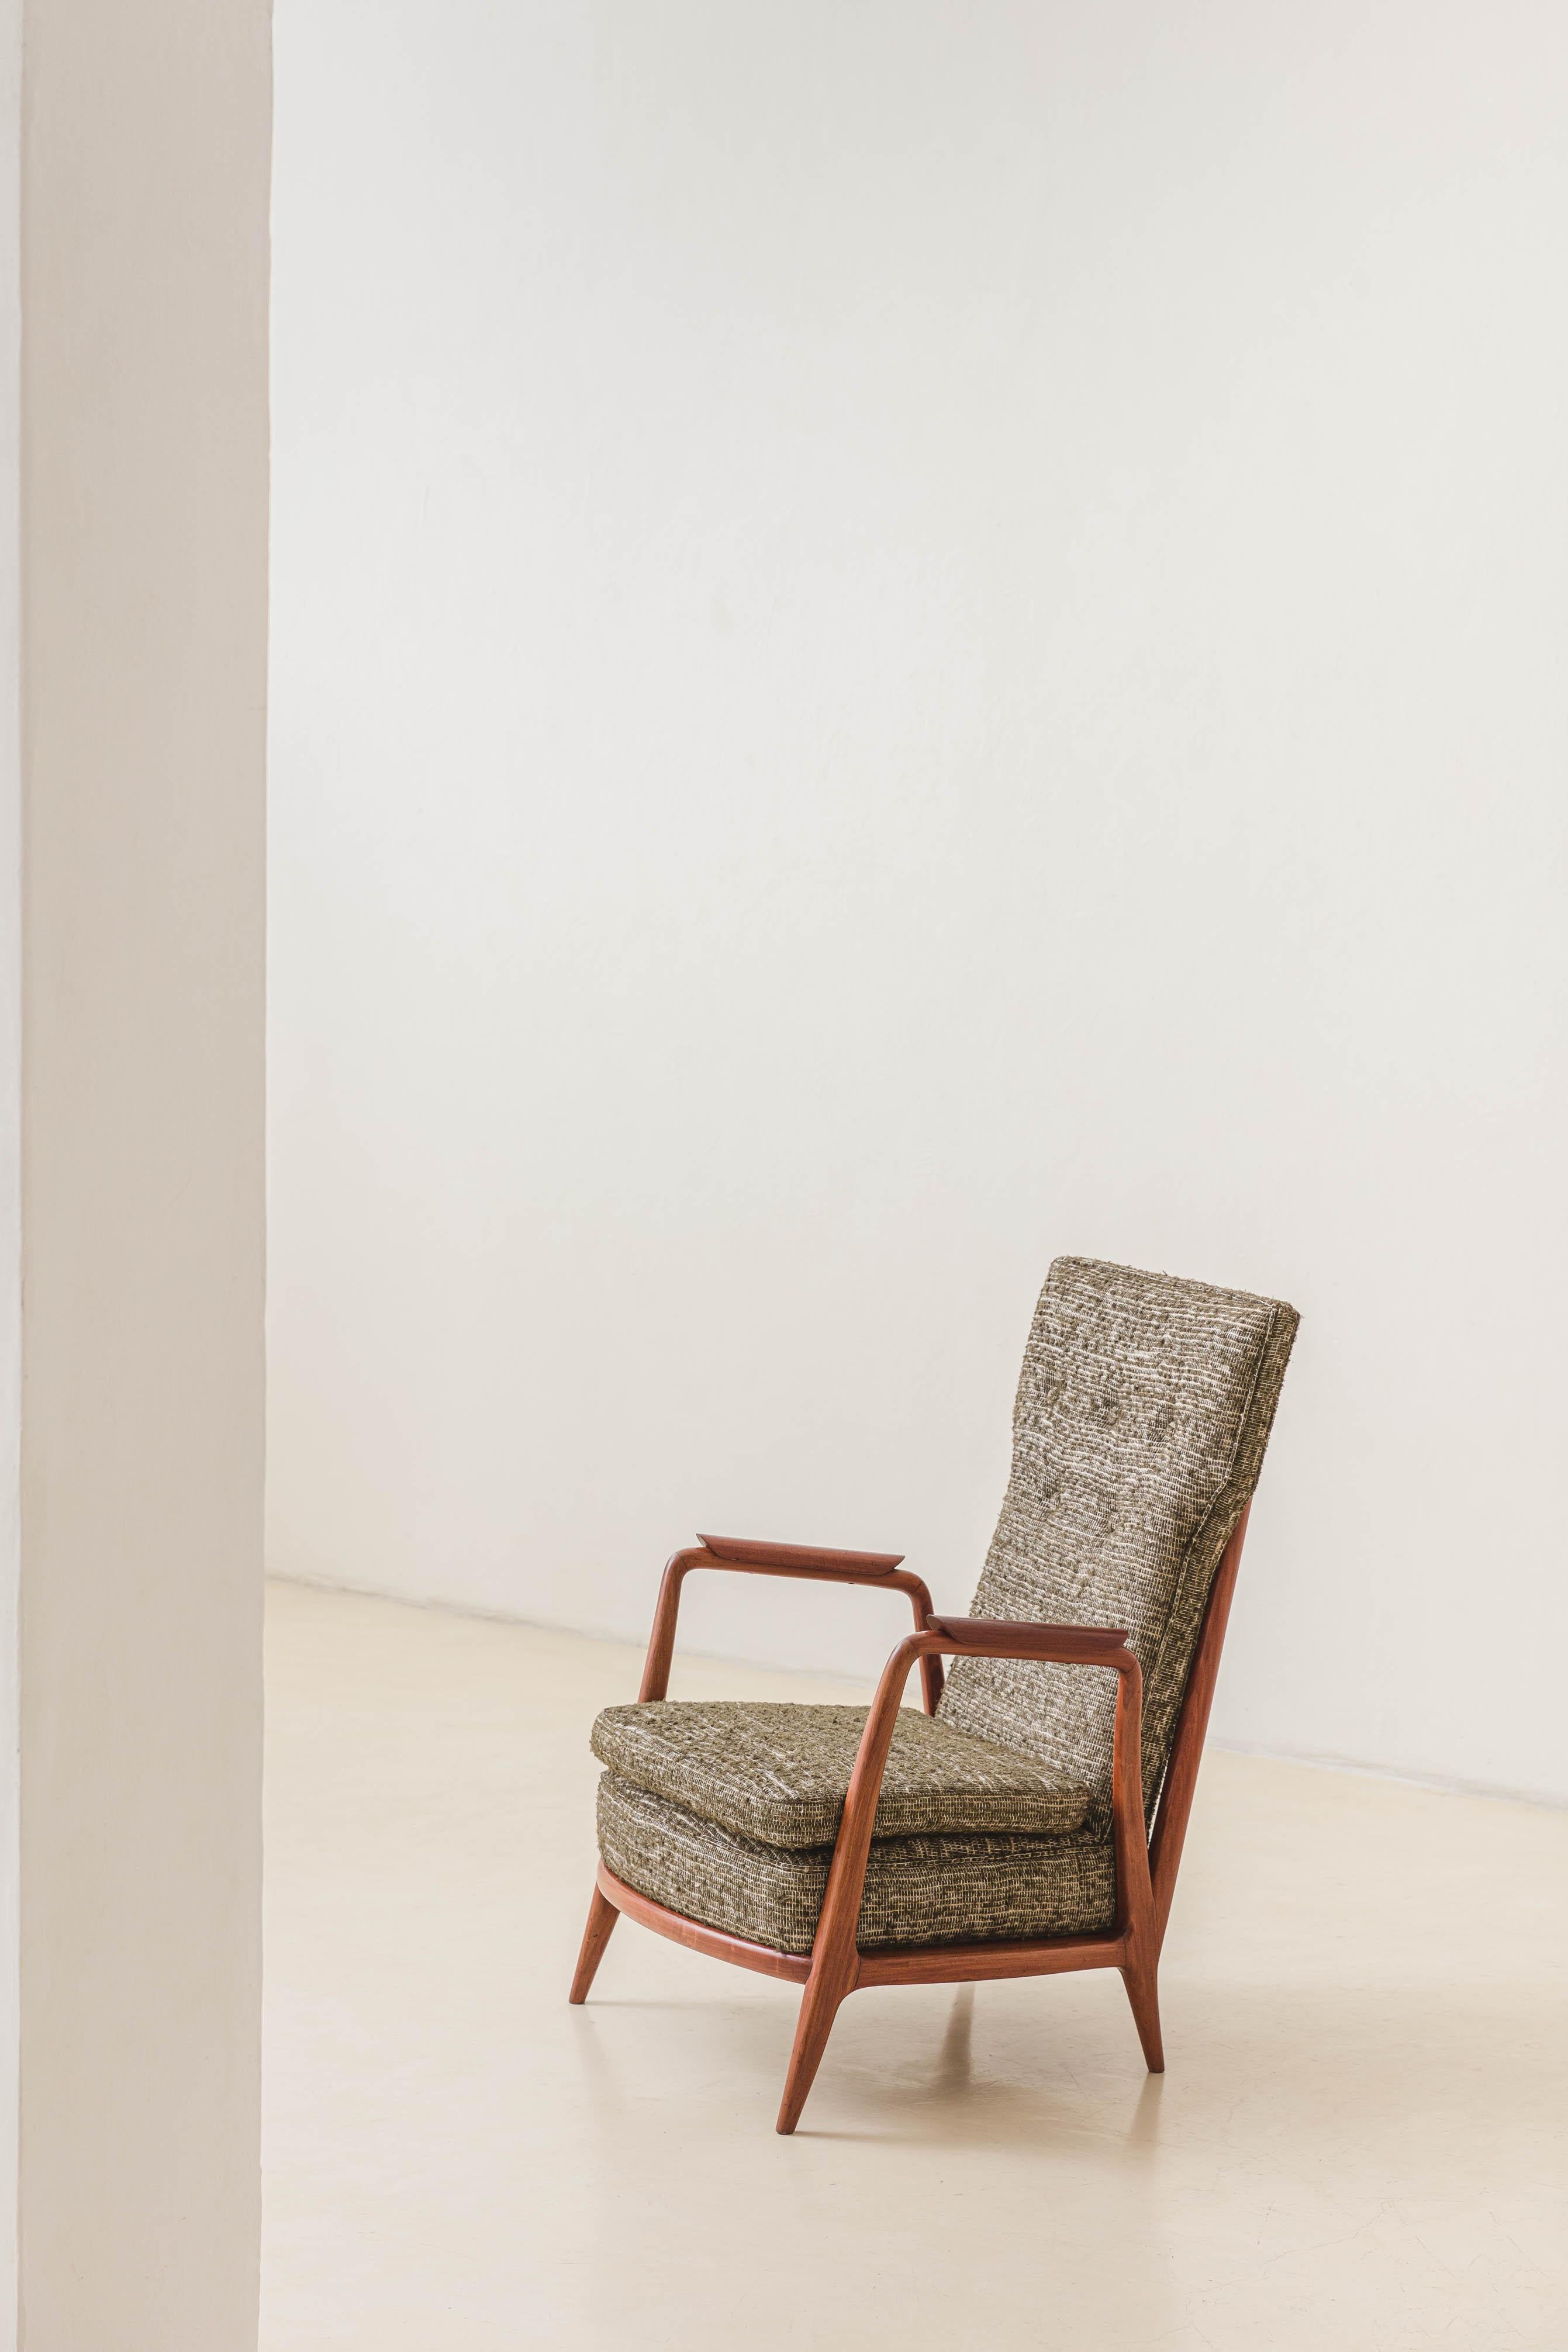 Dieser Sessel aus massivem Caviuna mit hohen Rückenlehnen wurde von Giuseppe Scapinelli (1911-1982) in den 1950er Jahren entworfen. Das Möbelstück hat Lattenroste mit dünnen vertikalen Stäben und eine bequeme Polsterung mit einem maßgeschneiderten